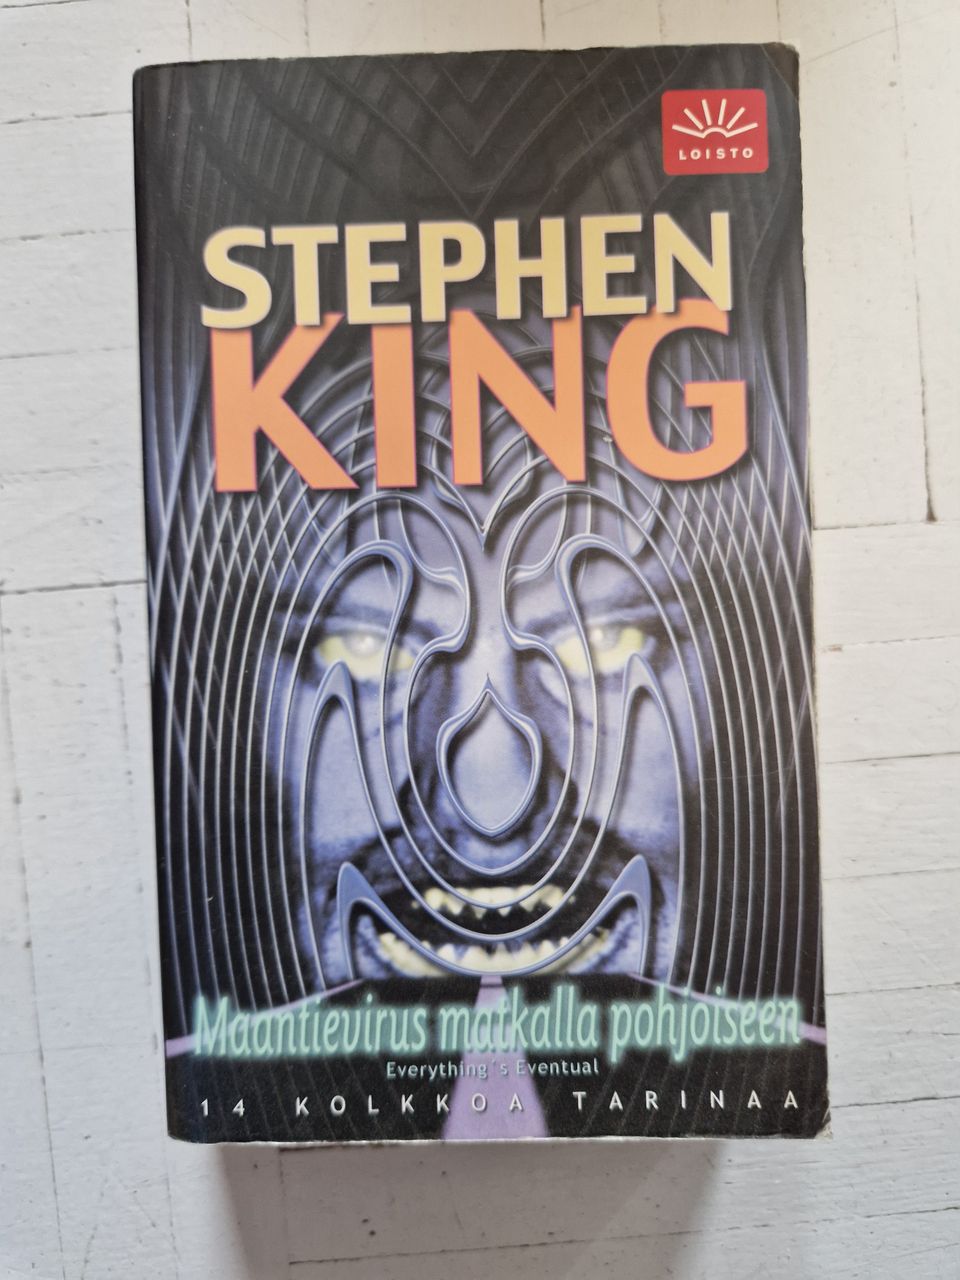 Stephen King - Maantievirus matkalla pohjoiseen